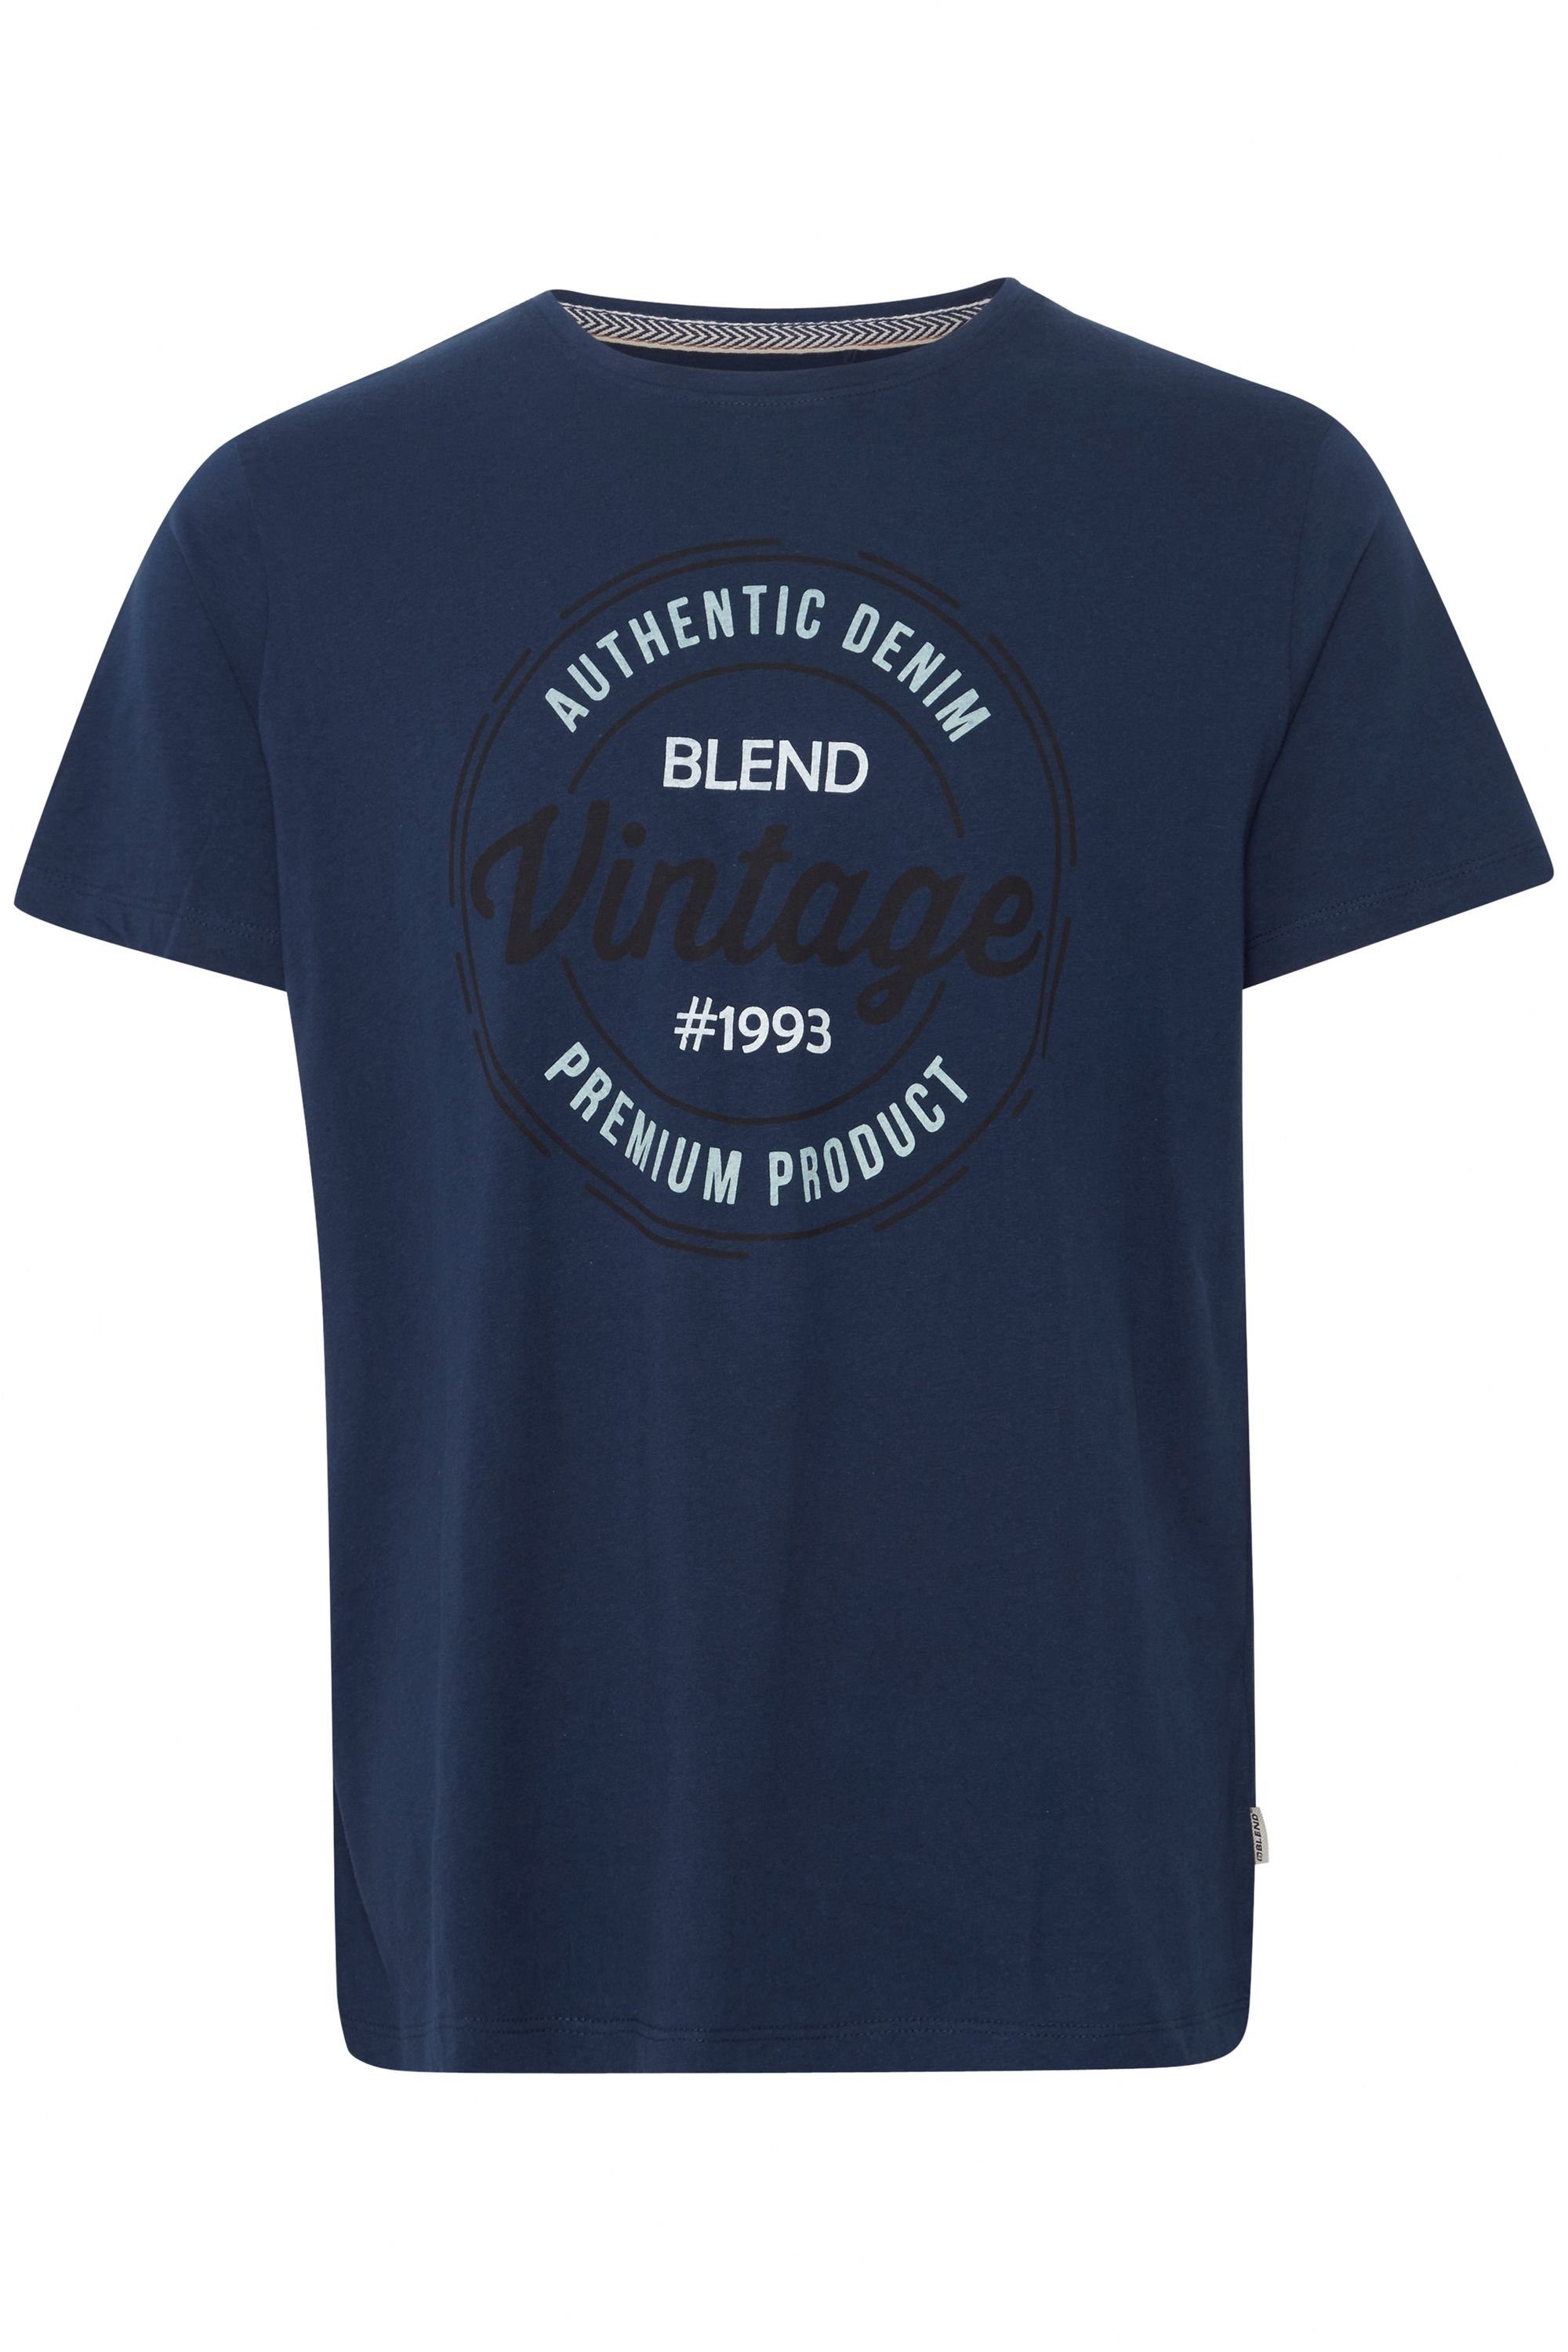 Blues Blend 20714811 BLEND T-Shirt Tee Dress